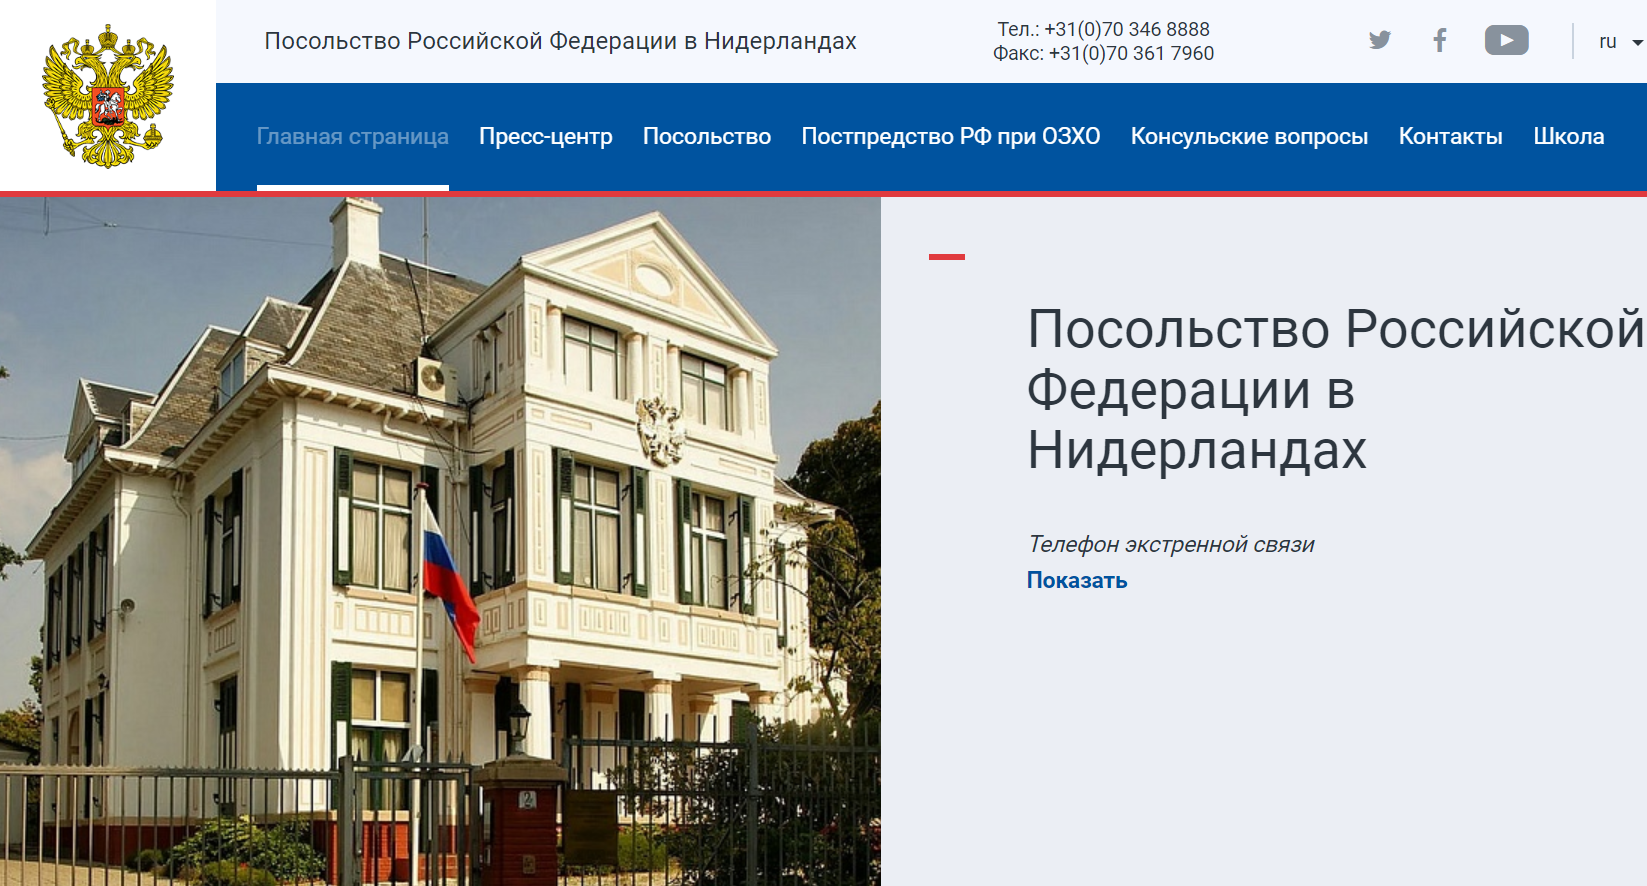 Сайт посольства РФ в Нидерландах. Скриншот.